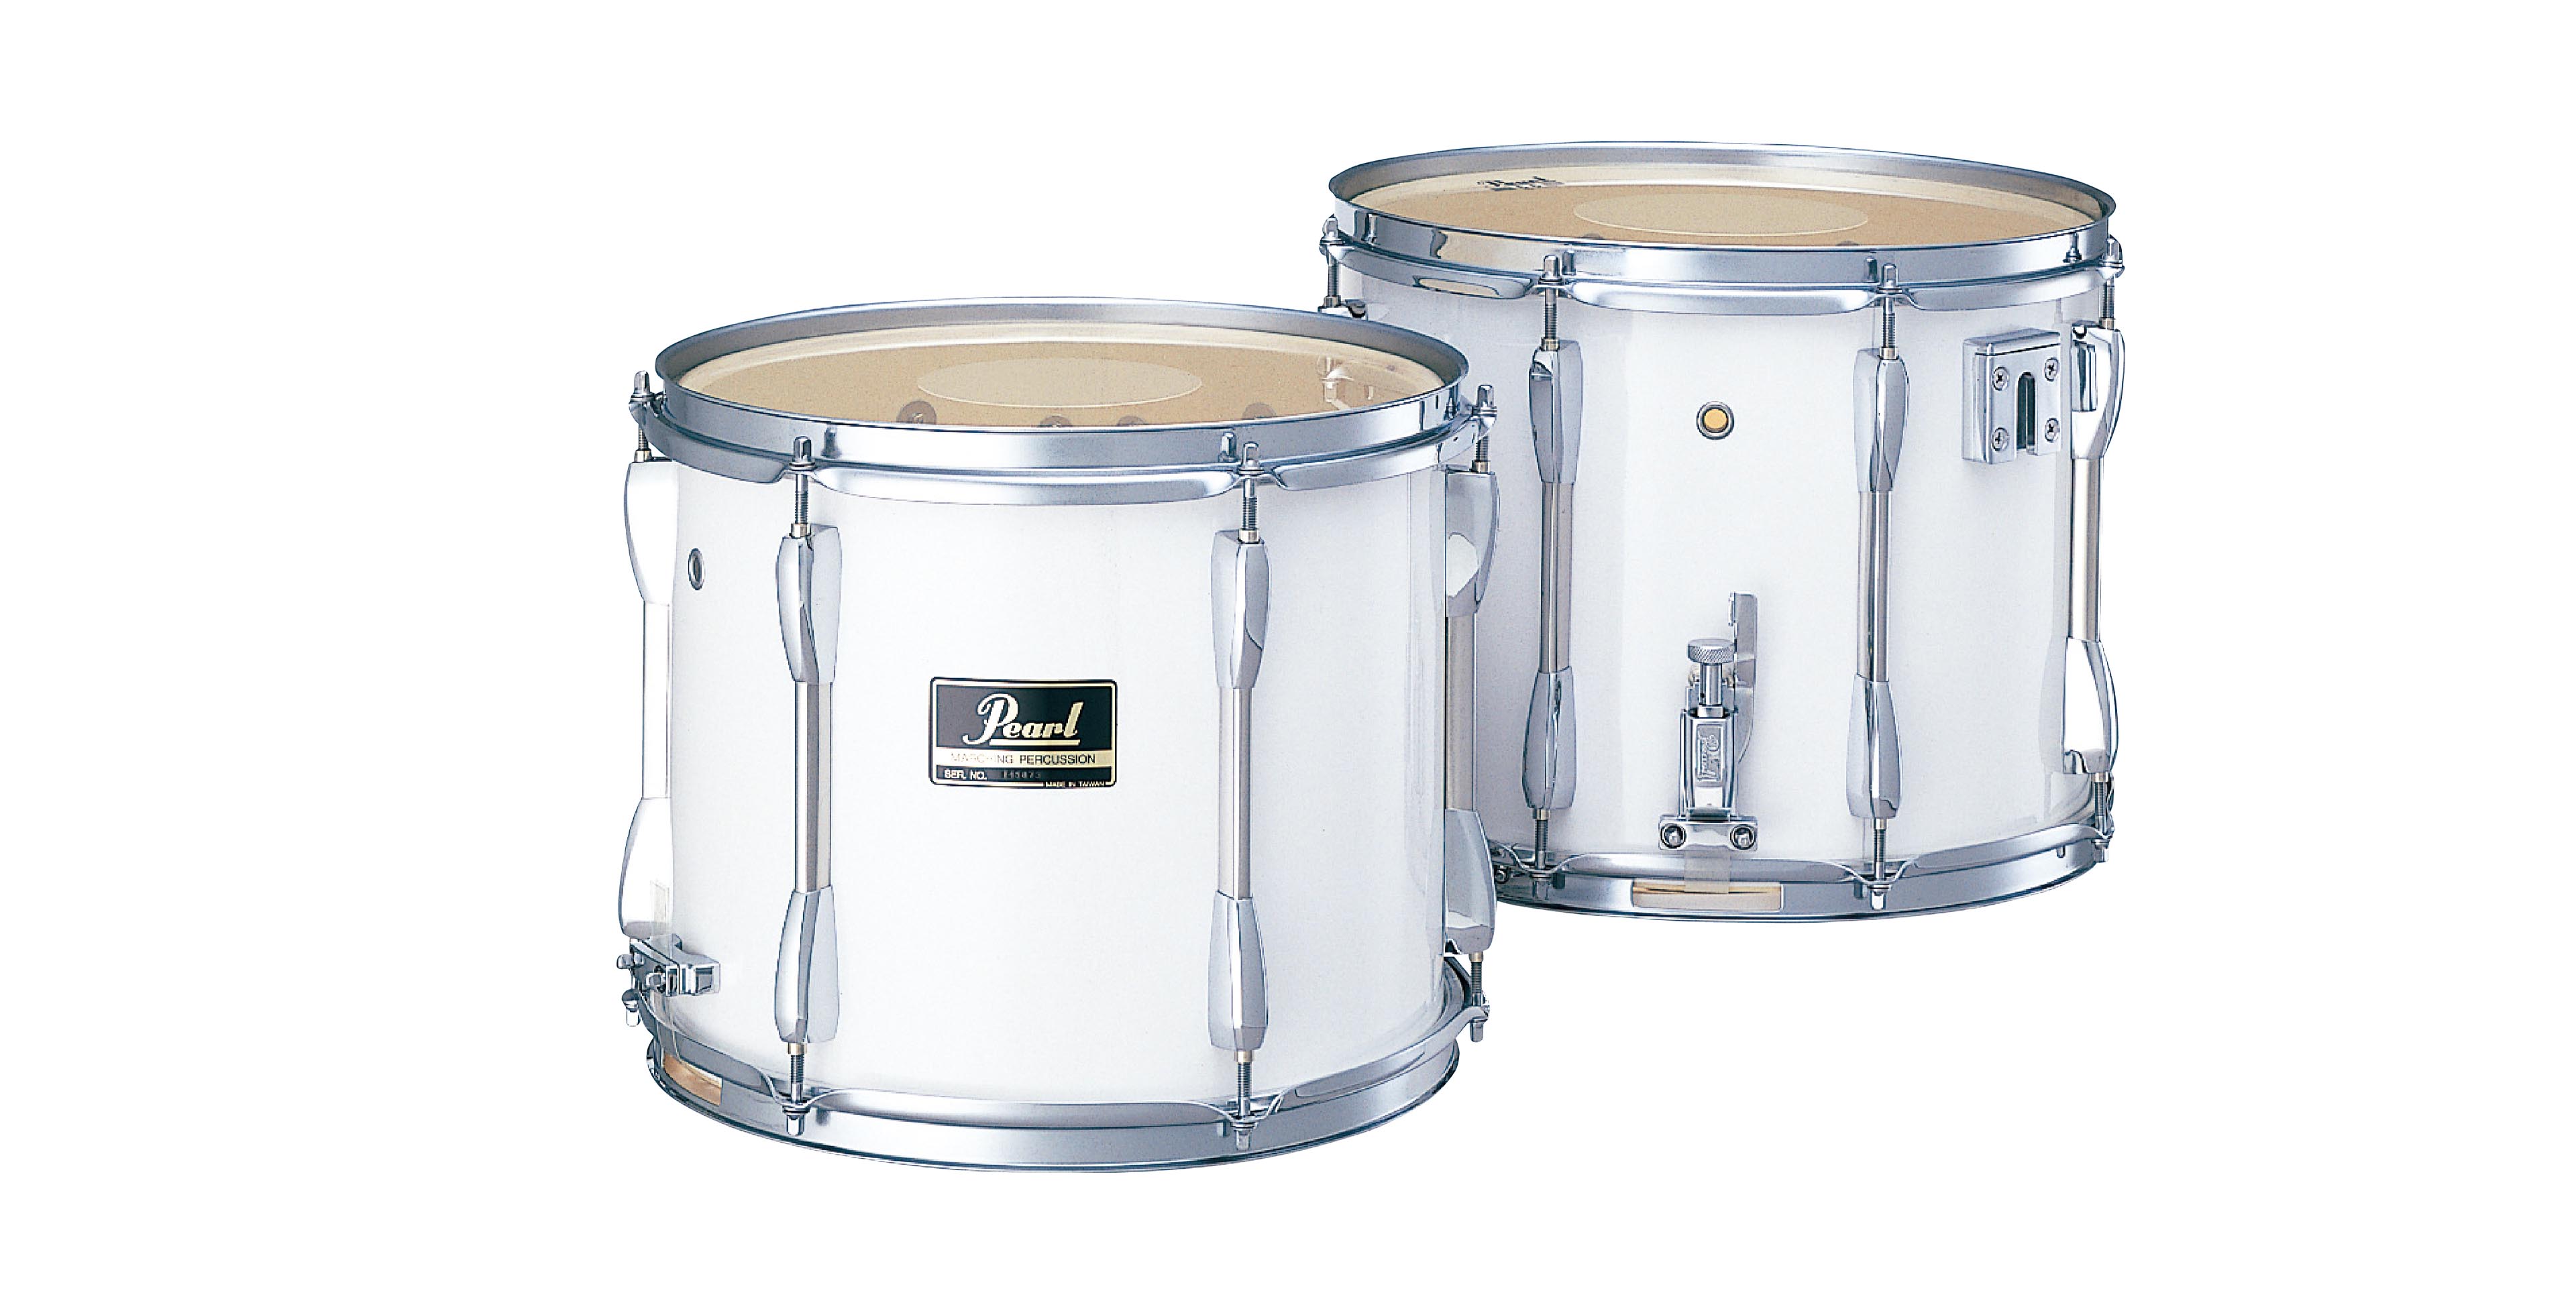 Snare Drums | パール楽器【公式サイト】Pearl Drums